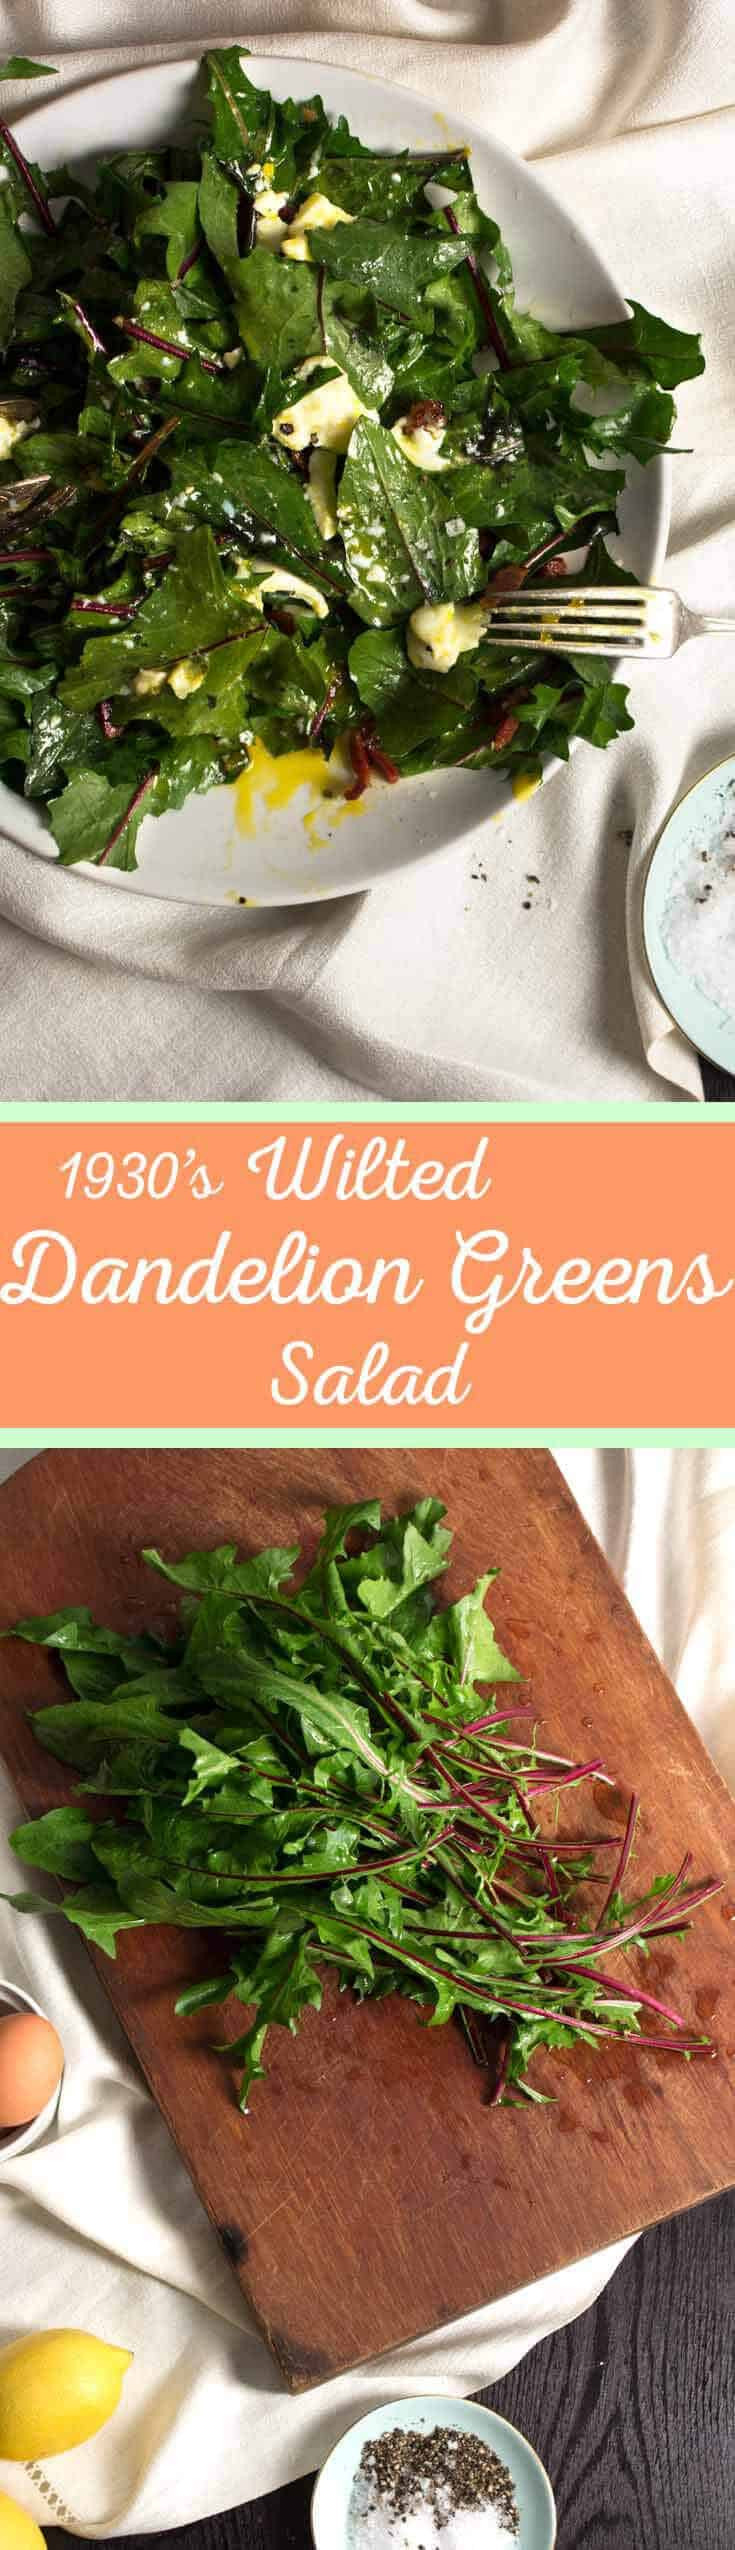 Dandelion Greens Salad
 Wilted Dandelion Greens Salad